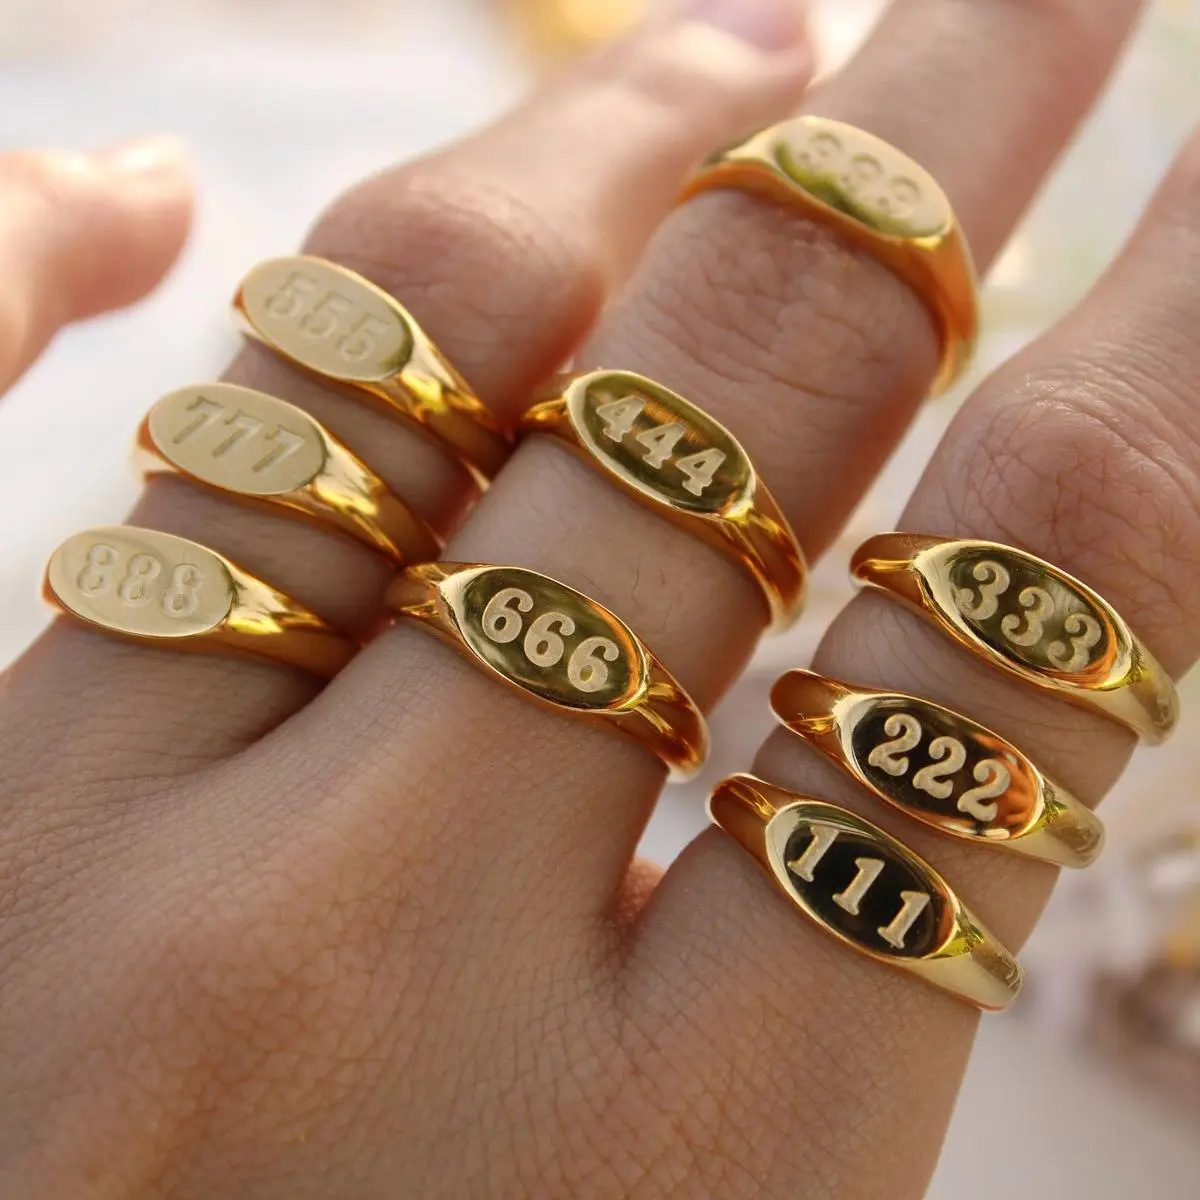 Toptan 18K altın kazınmış numaraları melek numarası halka 111-999 paslanmaz çelik su geçirmez halka moda mücevherat